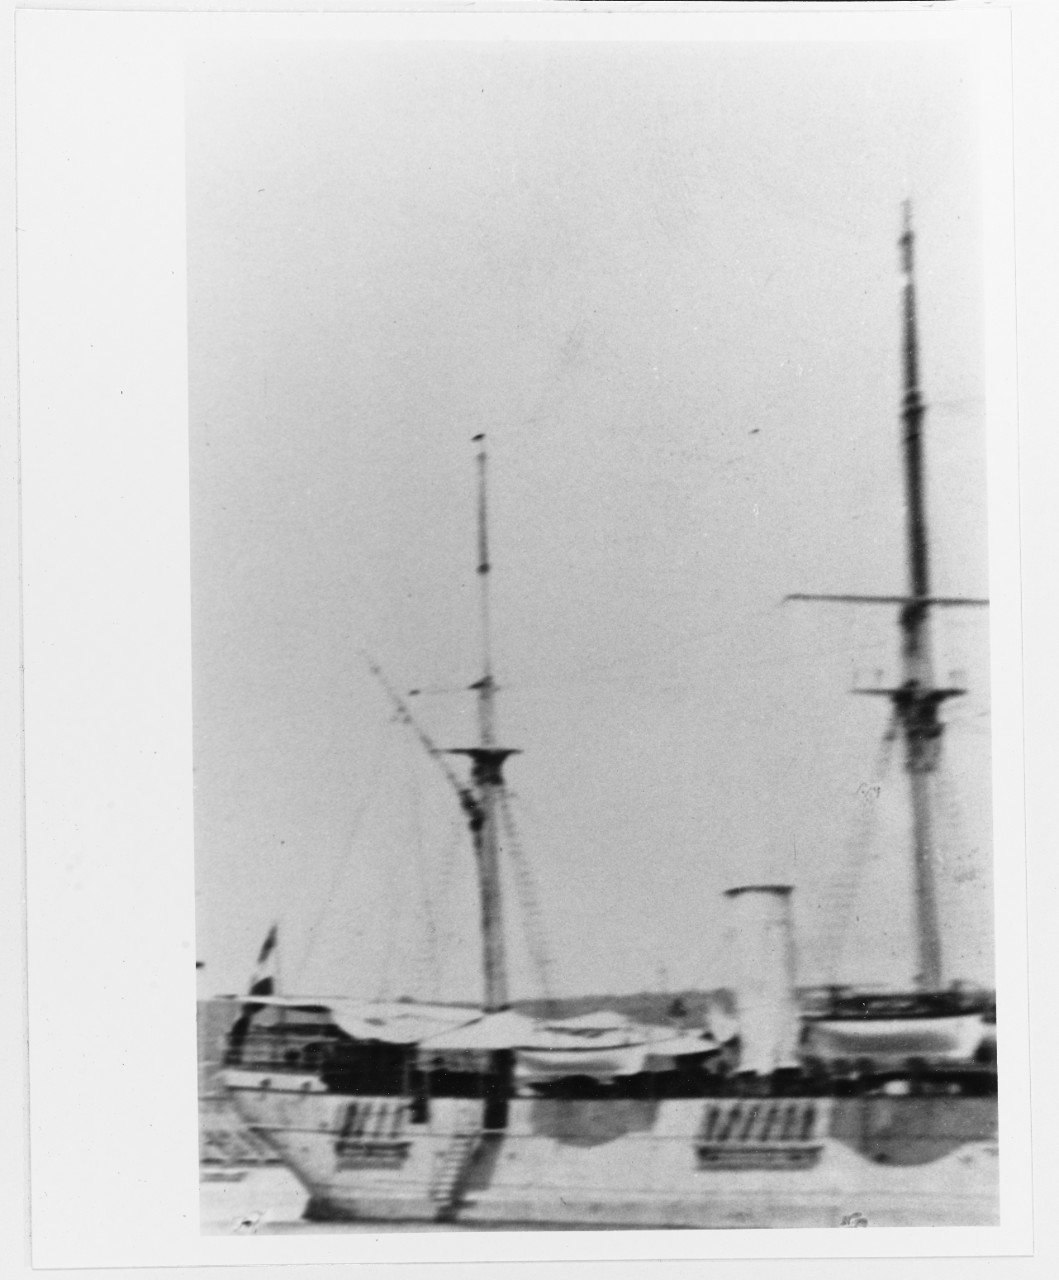 CYCLOP (Austrian Repair ship, 1871-1922)